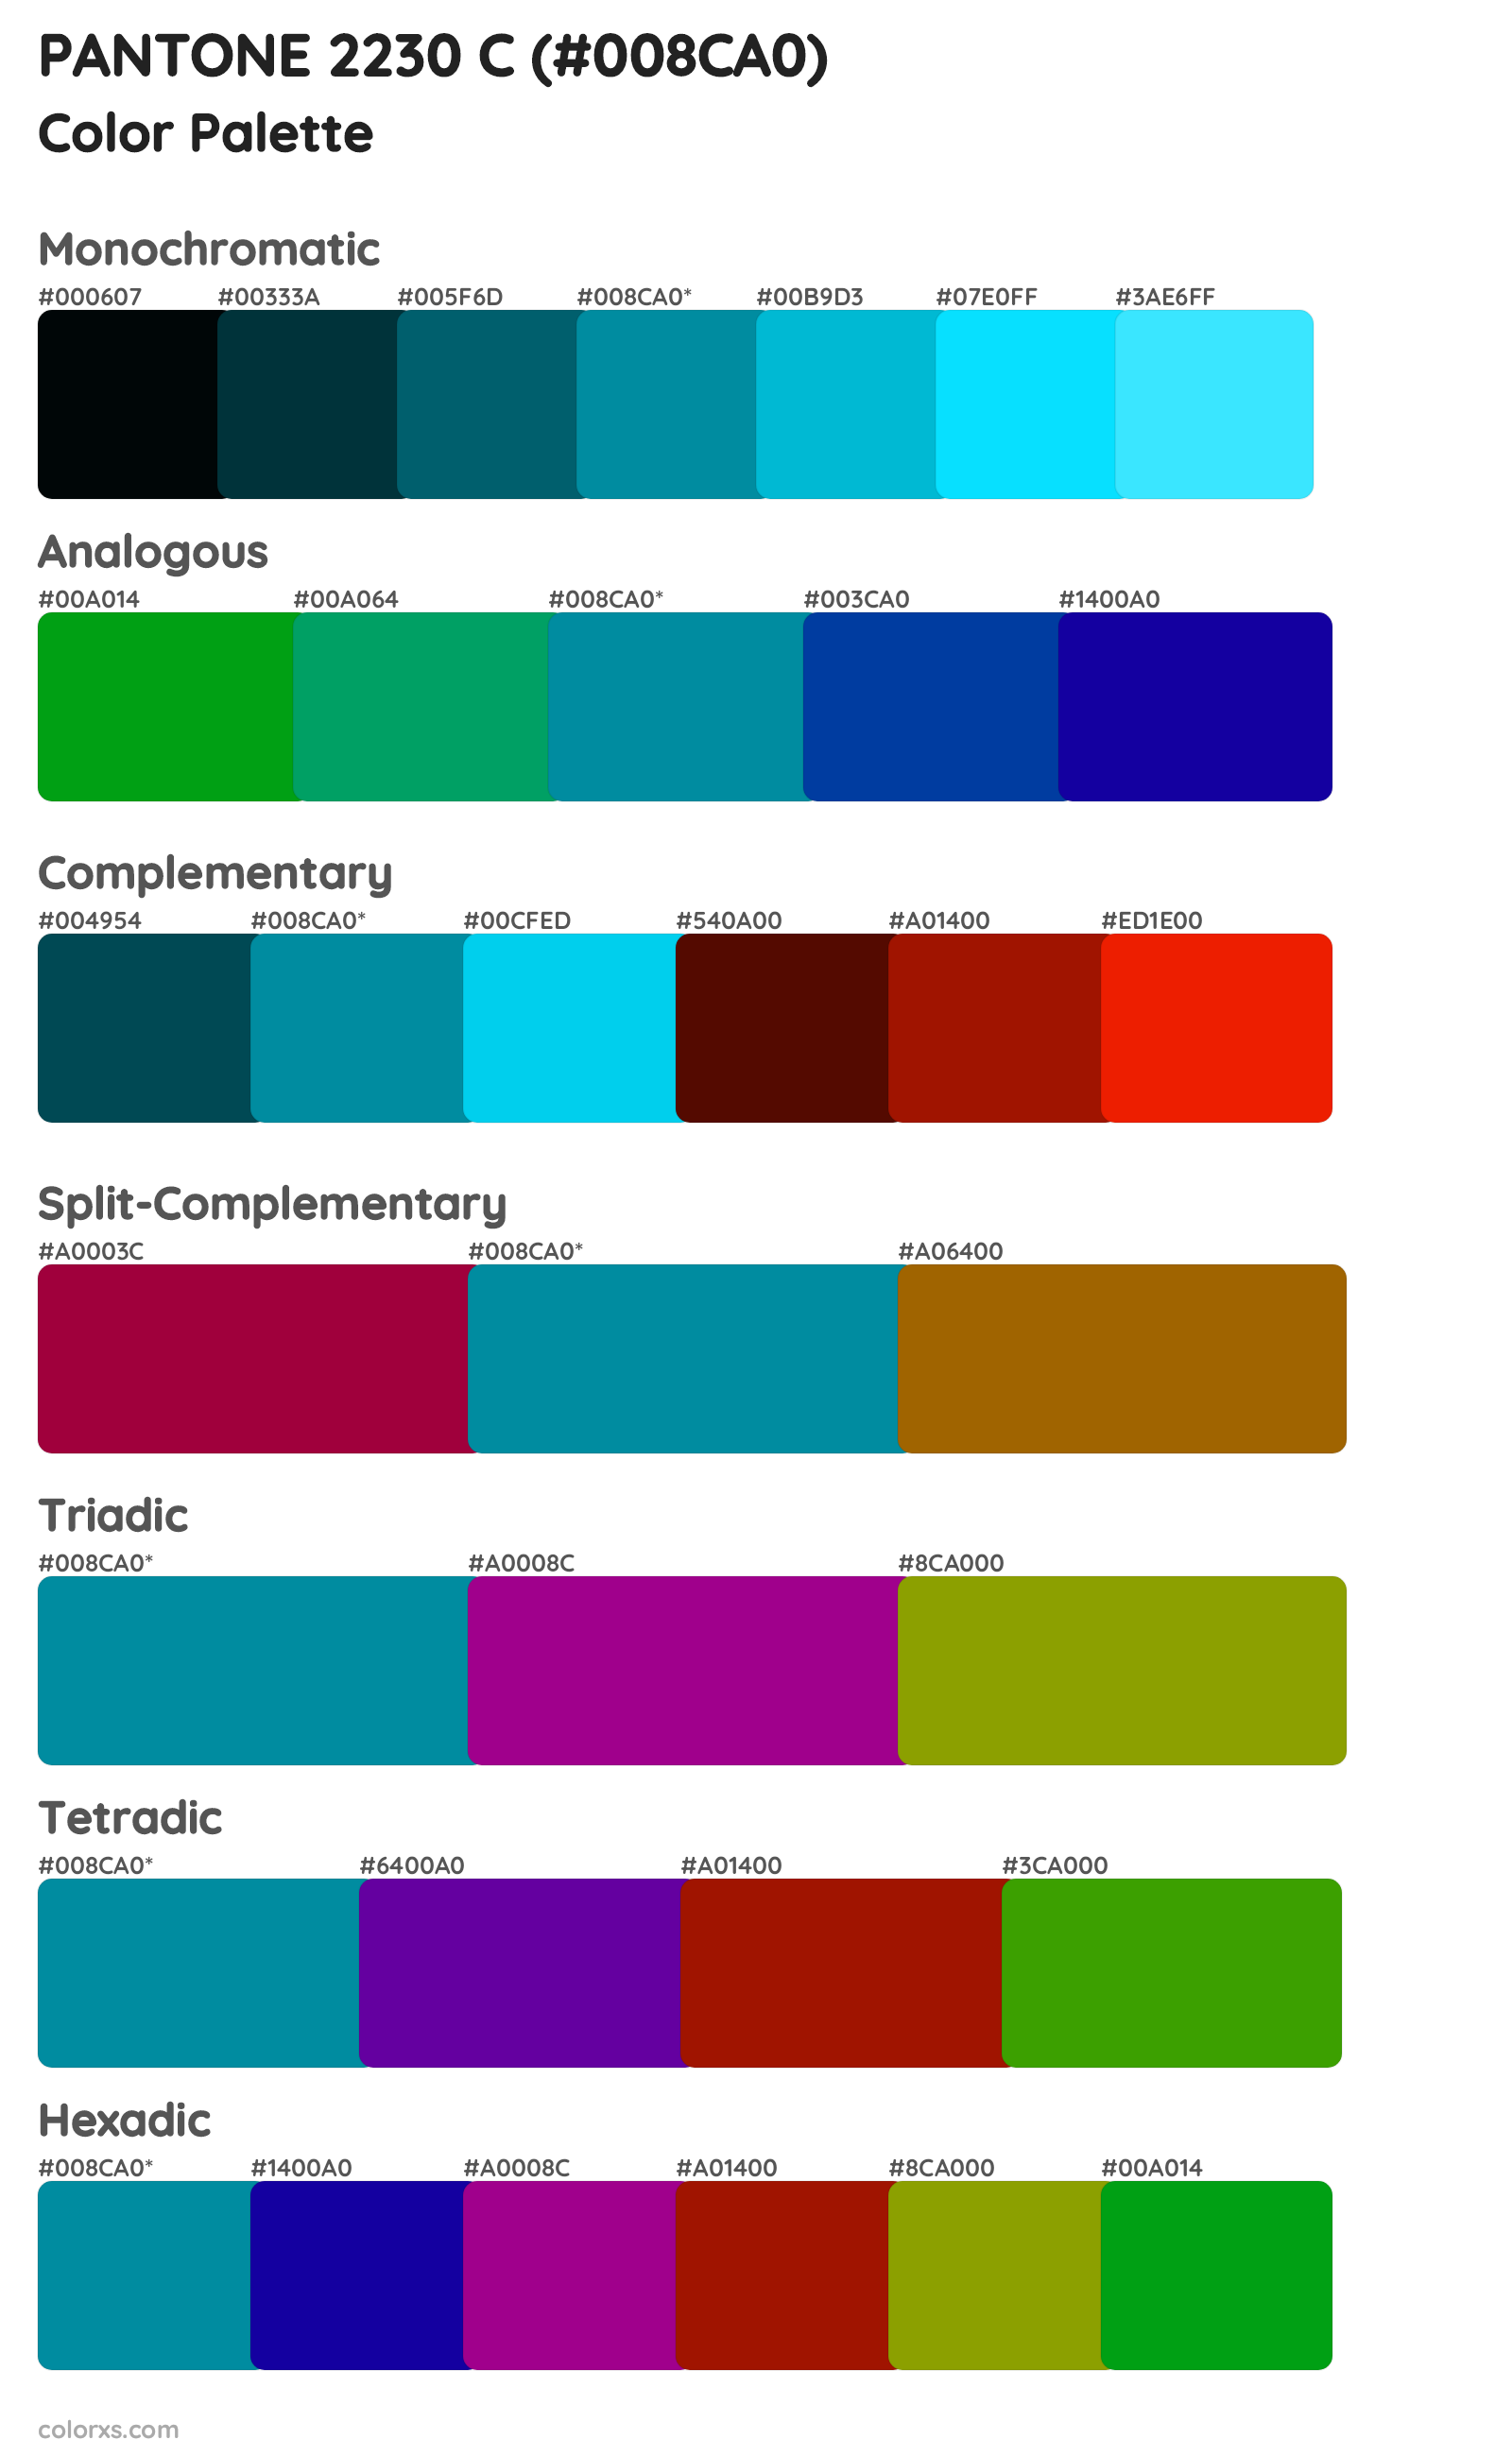 PANTONE 2230 C color palettes and color scheme combinations - colorxs.com